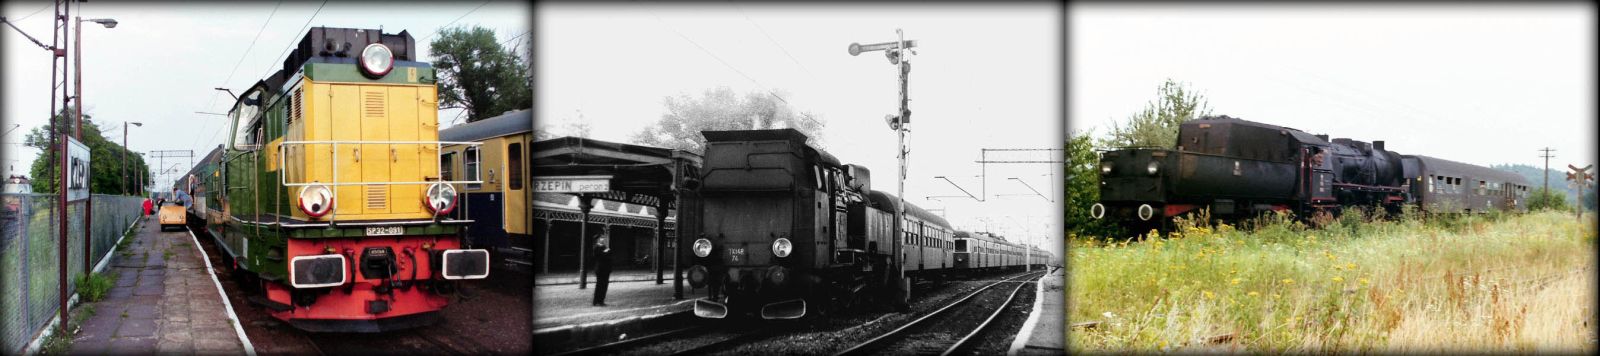 Od lewej: SP32-091 przyprowadziła wieczorny pociąg z Międzyrzecza do Rzepina w dniu 11.06.1994. Bagażowy Pan Weryk. W środku Tkt-48-74 do Sulęcina na stacji Rzepin w dniu 08.09.1986. Maszynistą był Pan Adamczak z Międzyrzecza - nie żyje. Pomocnikiem był Pan Szajer. Osobowy Rzepin - Sulęcin zbliża się do Kurska w dniu 05.08.1990.